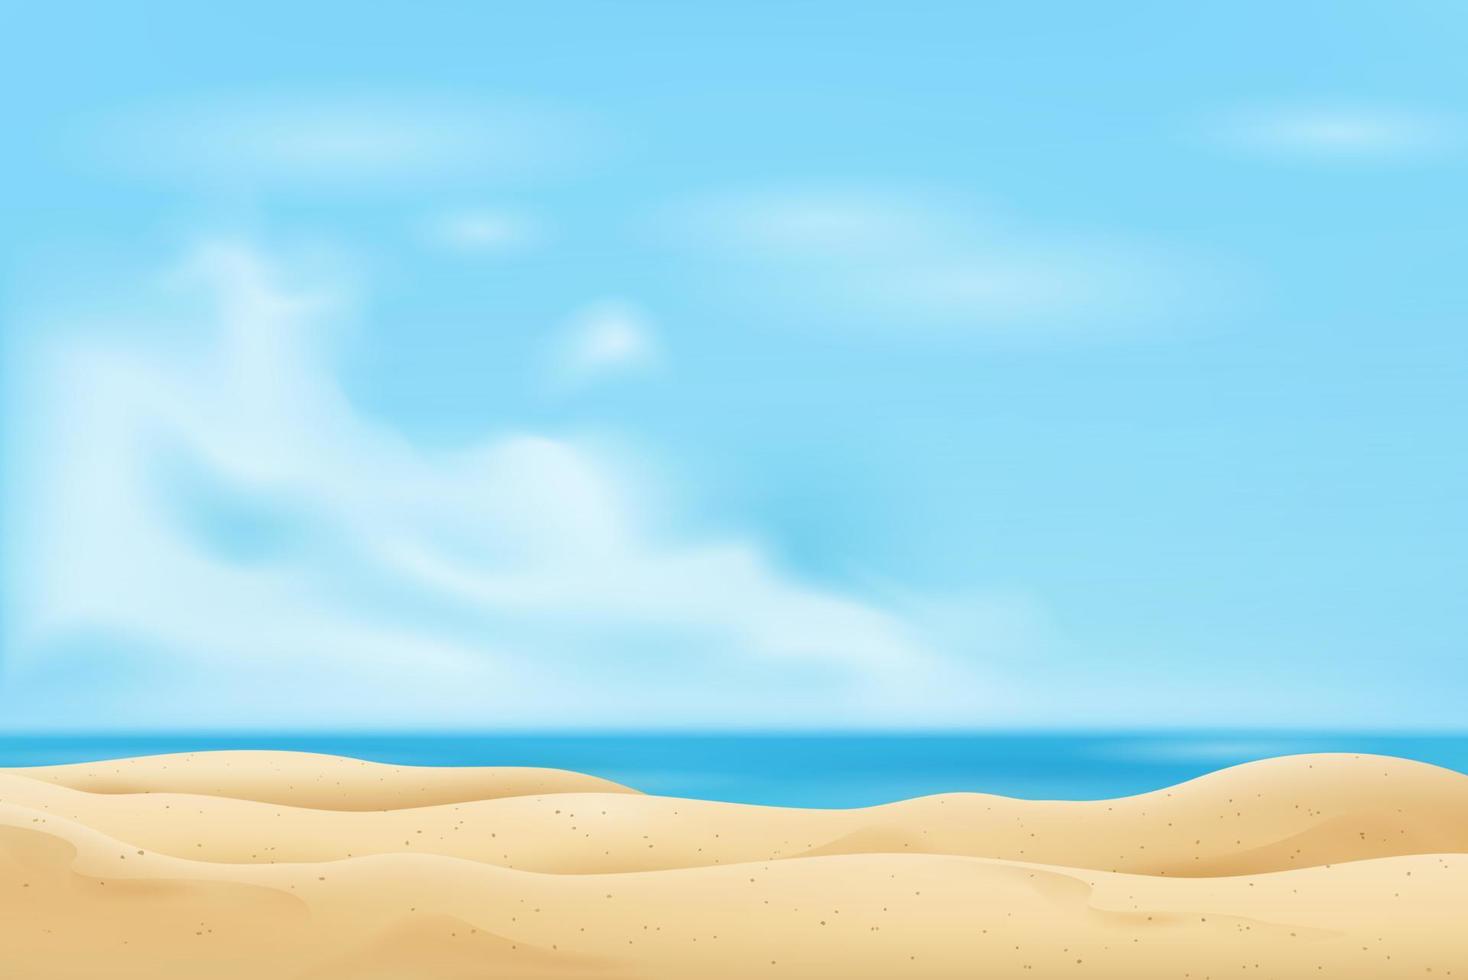 praia de areia vazia no fundo do céu azul fresco de verão vetor